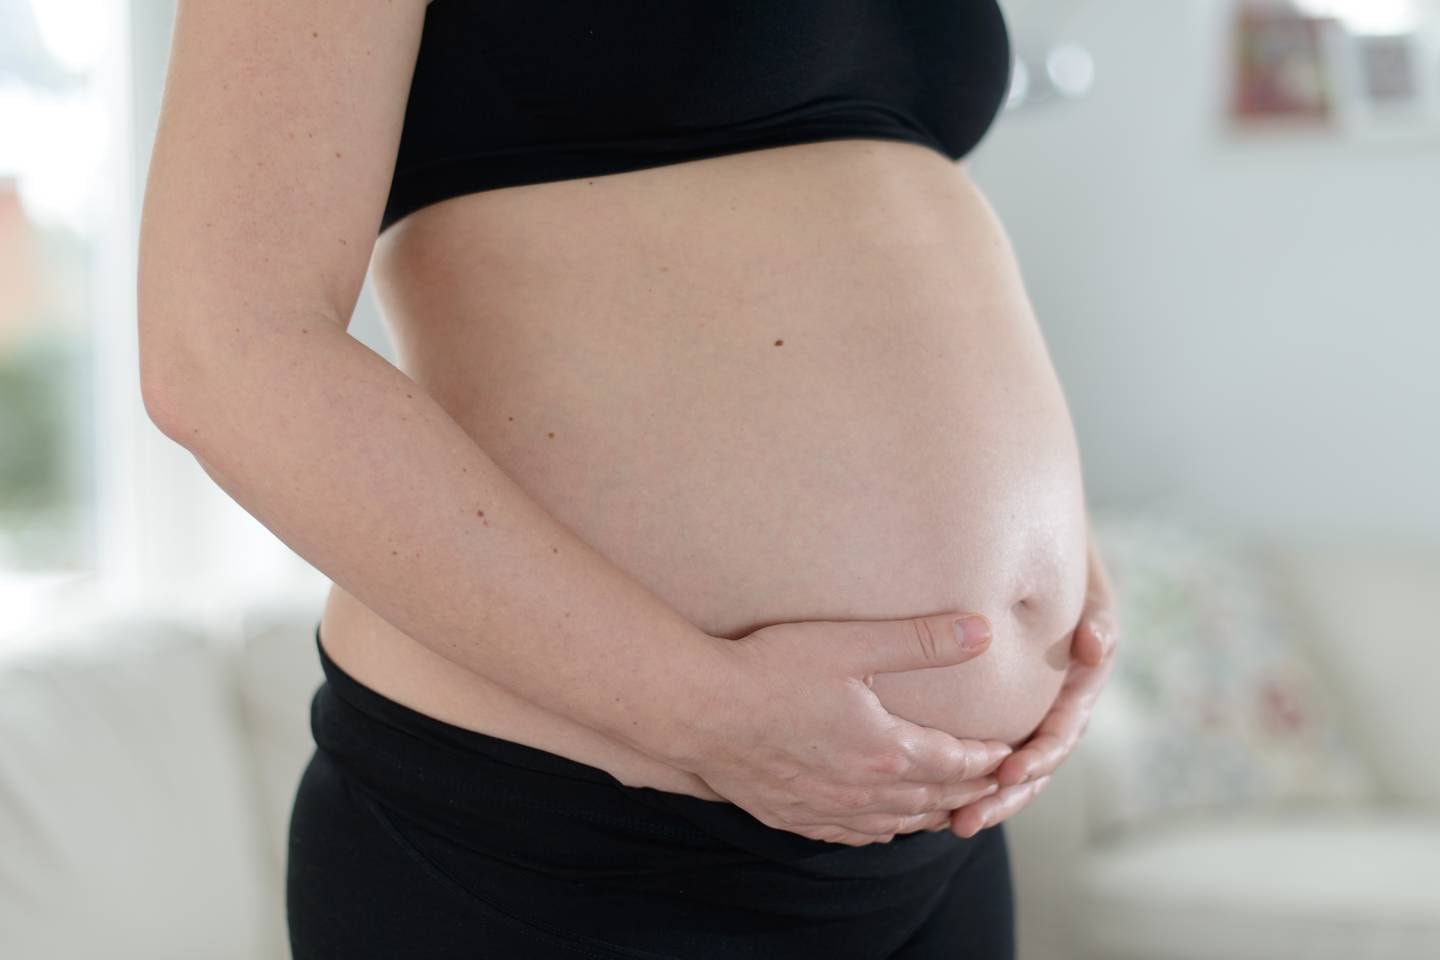 Vekten av barnet og hormonforandringer under graviditet, fører til svekkelse i bekkenbunnsmuskulaturen hos gravide kvinner. Mange opplever også at skjulte fødselssakder gir utfordringer.